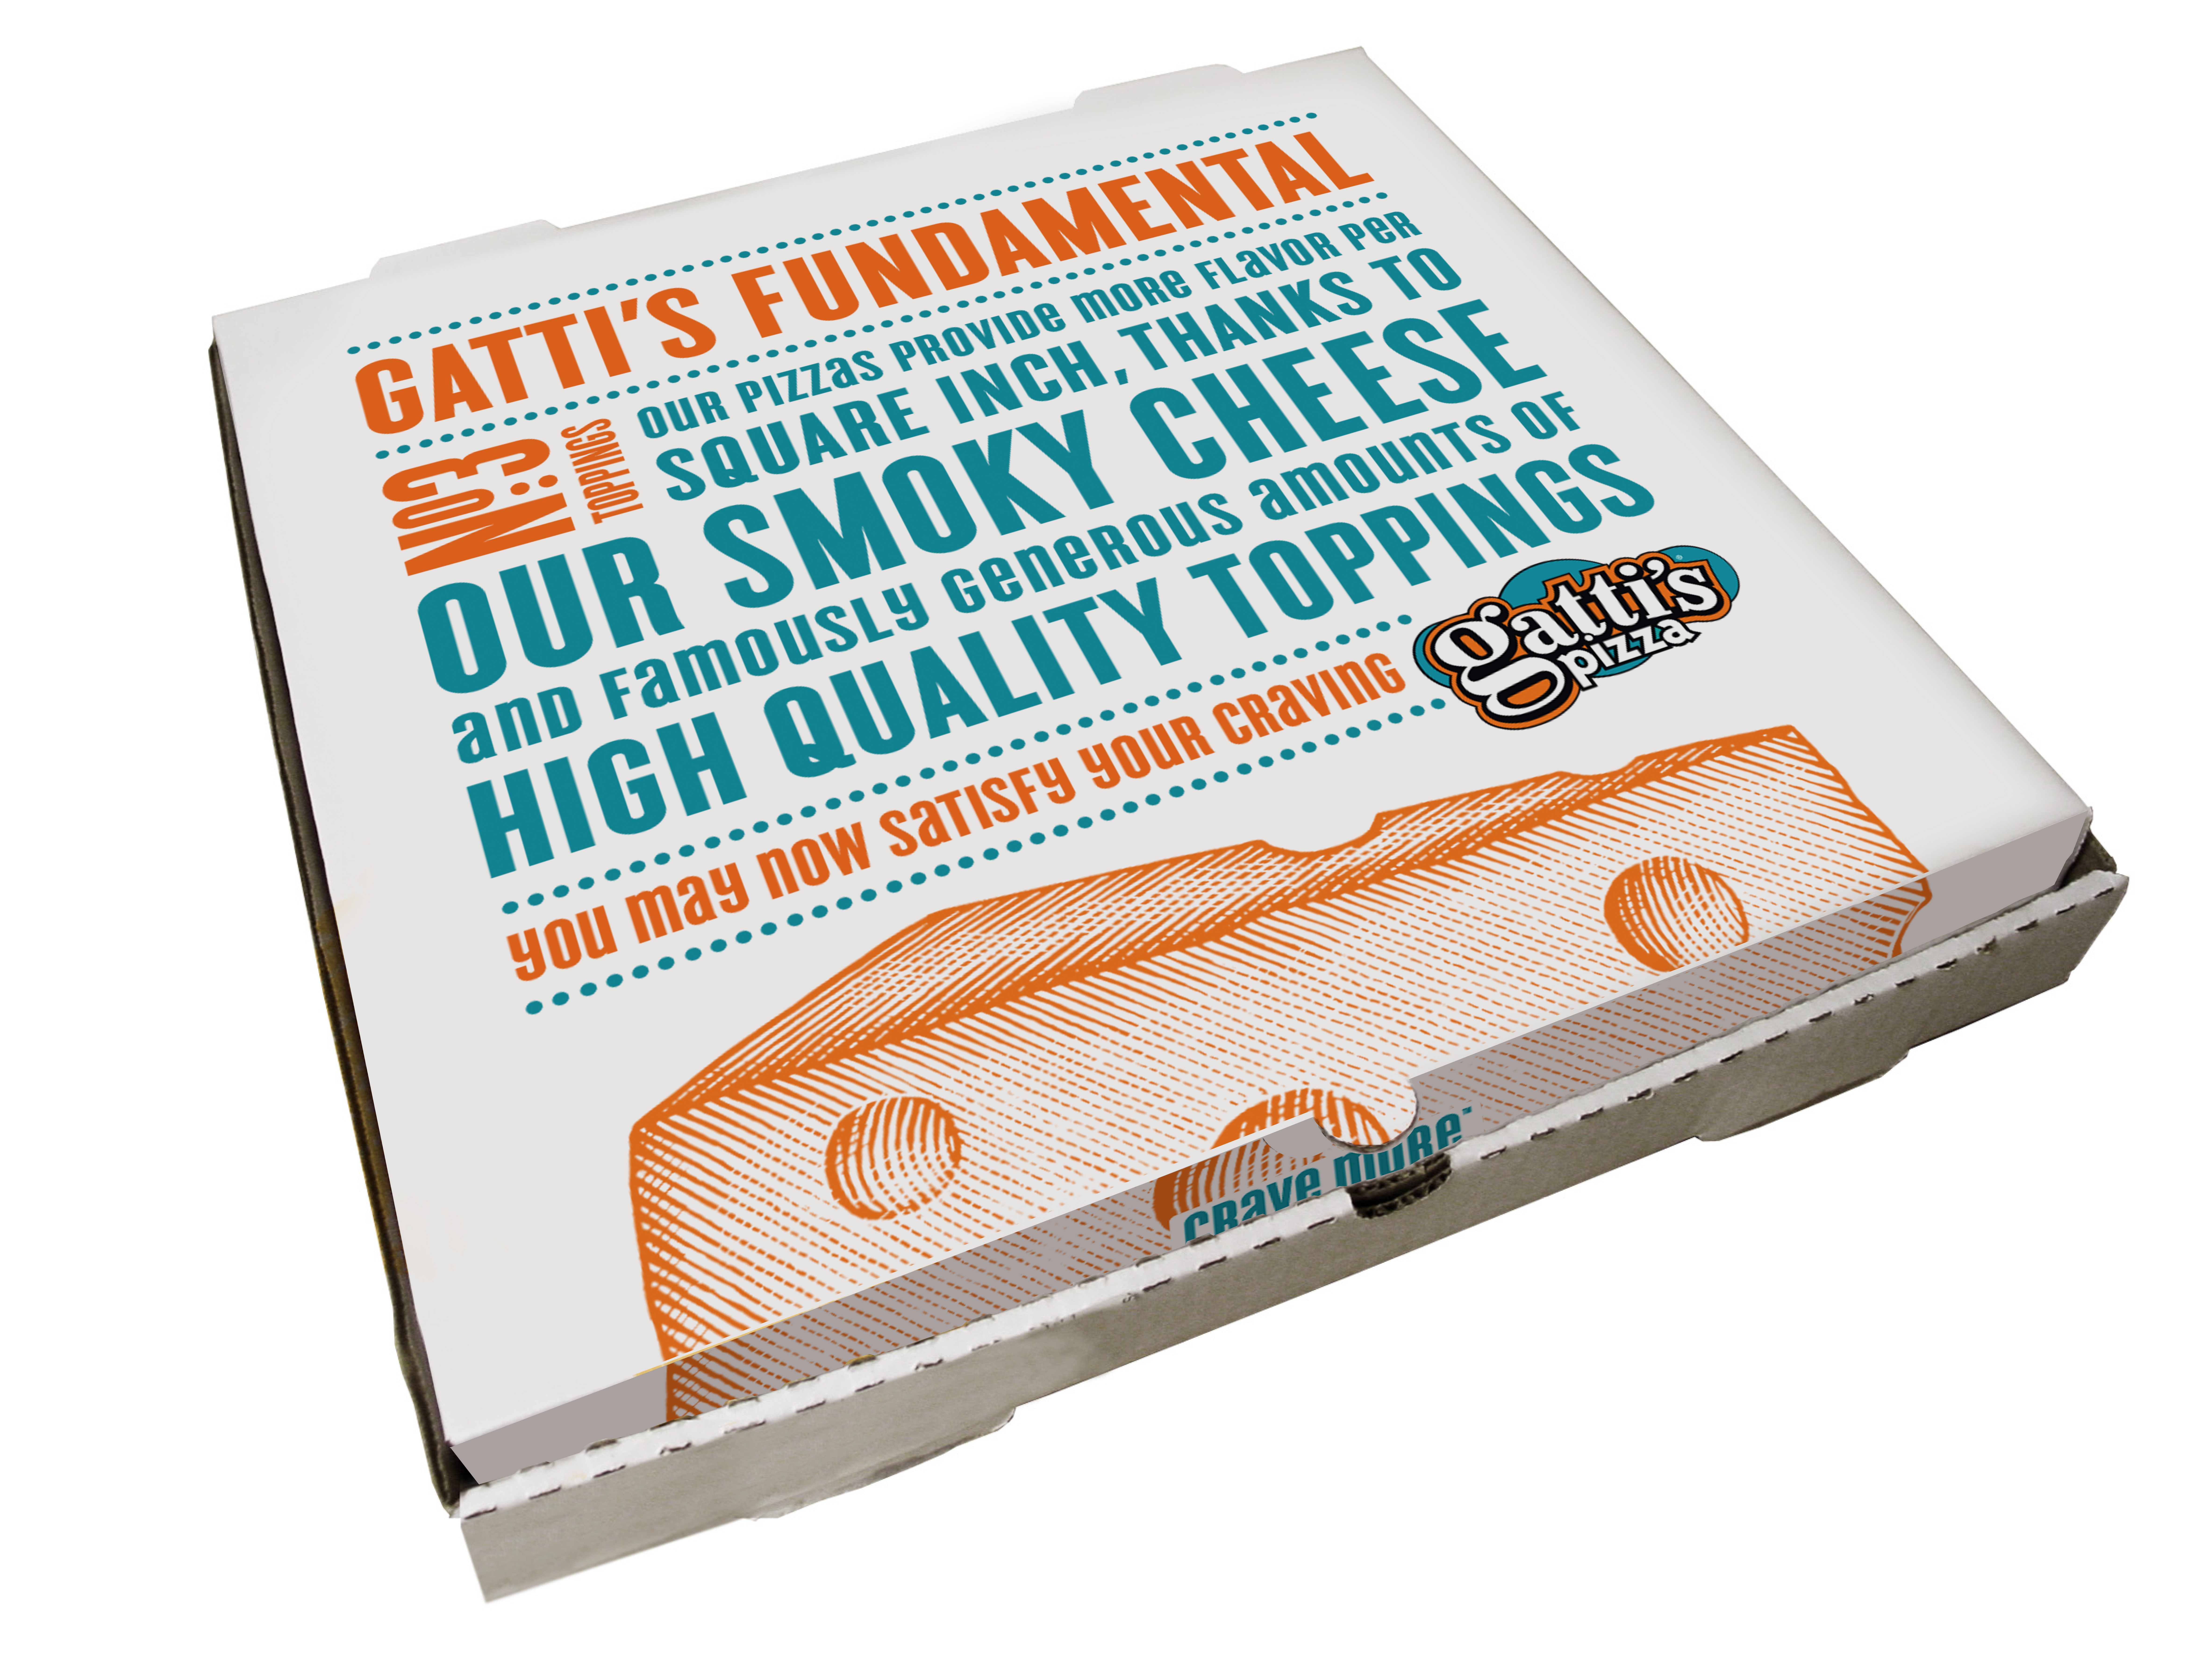 Gattis Pizza box design